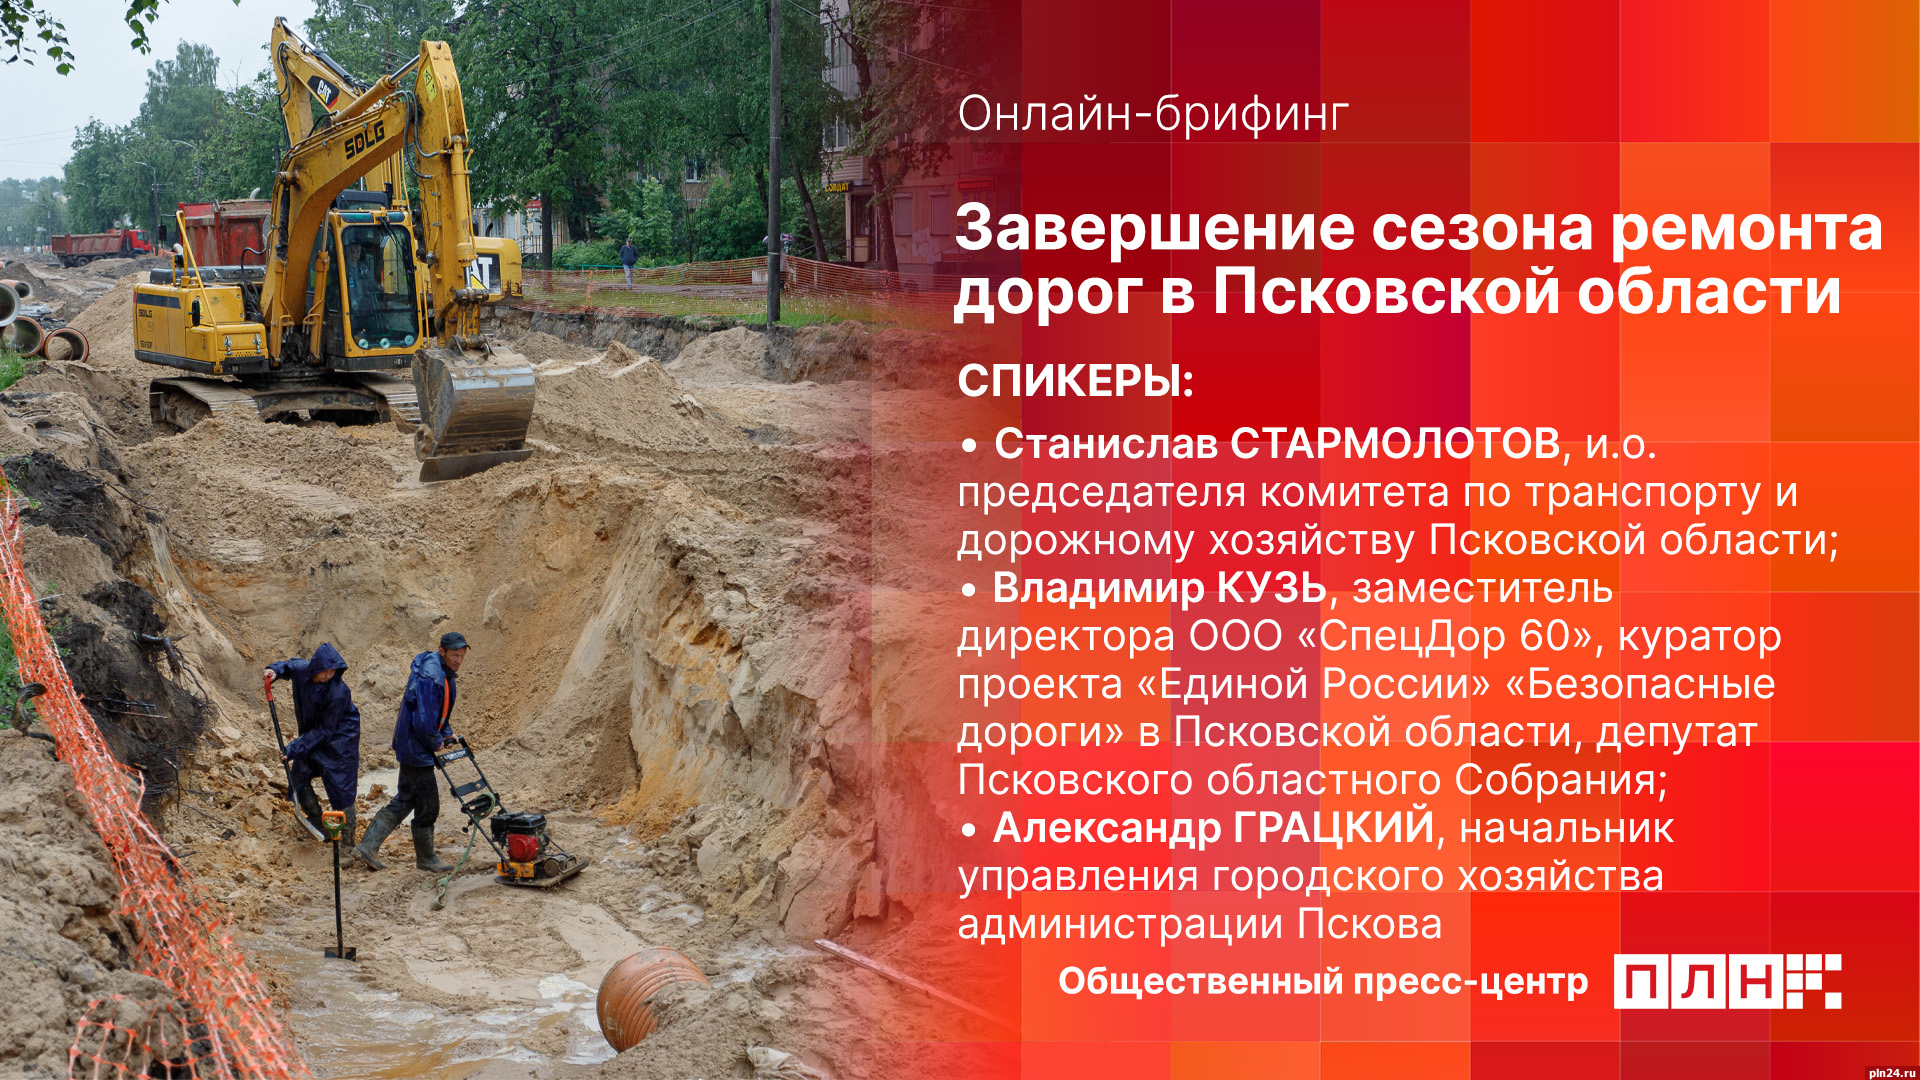 Начинается видеотрансляция онлайн-брифинга о завершении сезона ремонта дорог в Псковской области